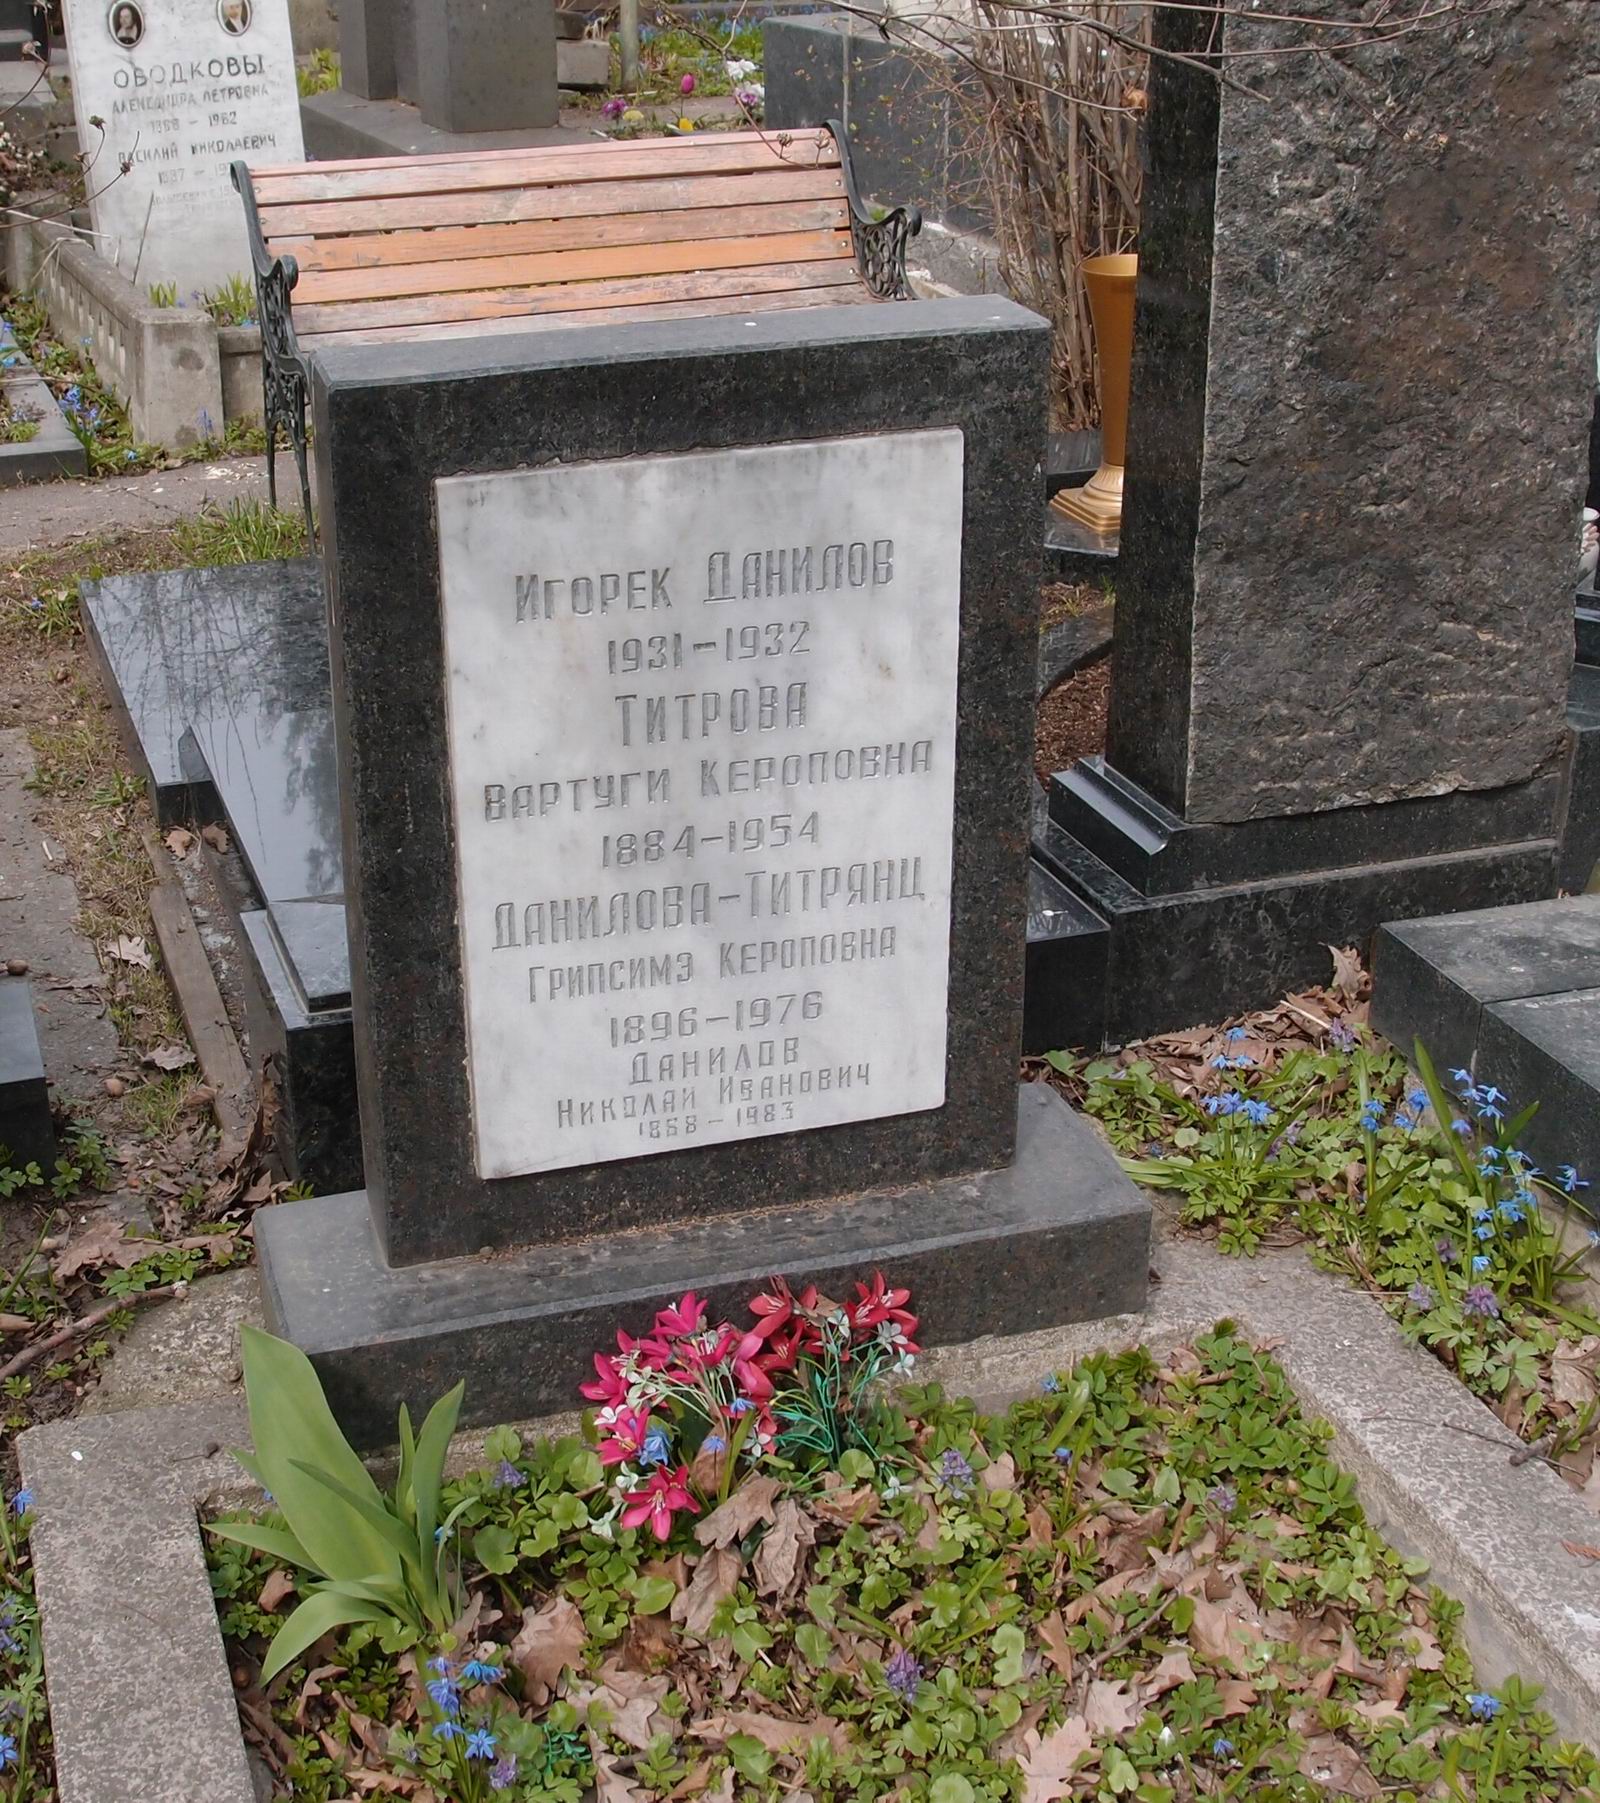 Памятник на могиле Даниловой-Титрянц Г.К. (1896–1976), на Новодевичьем кладбище (3–9–11).